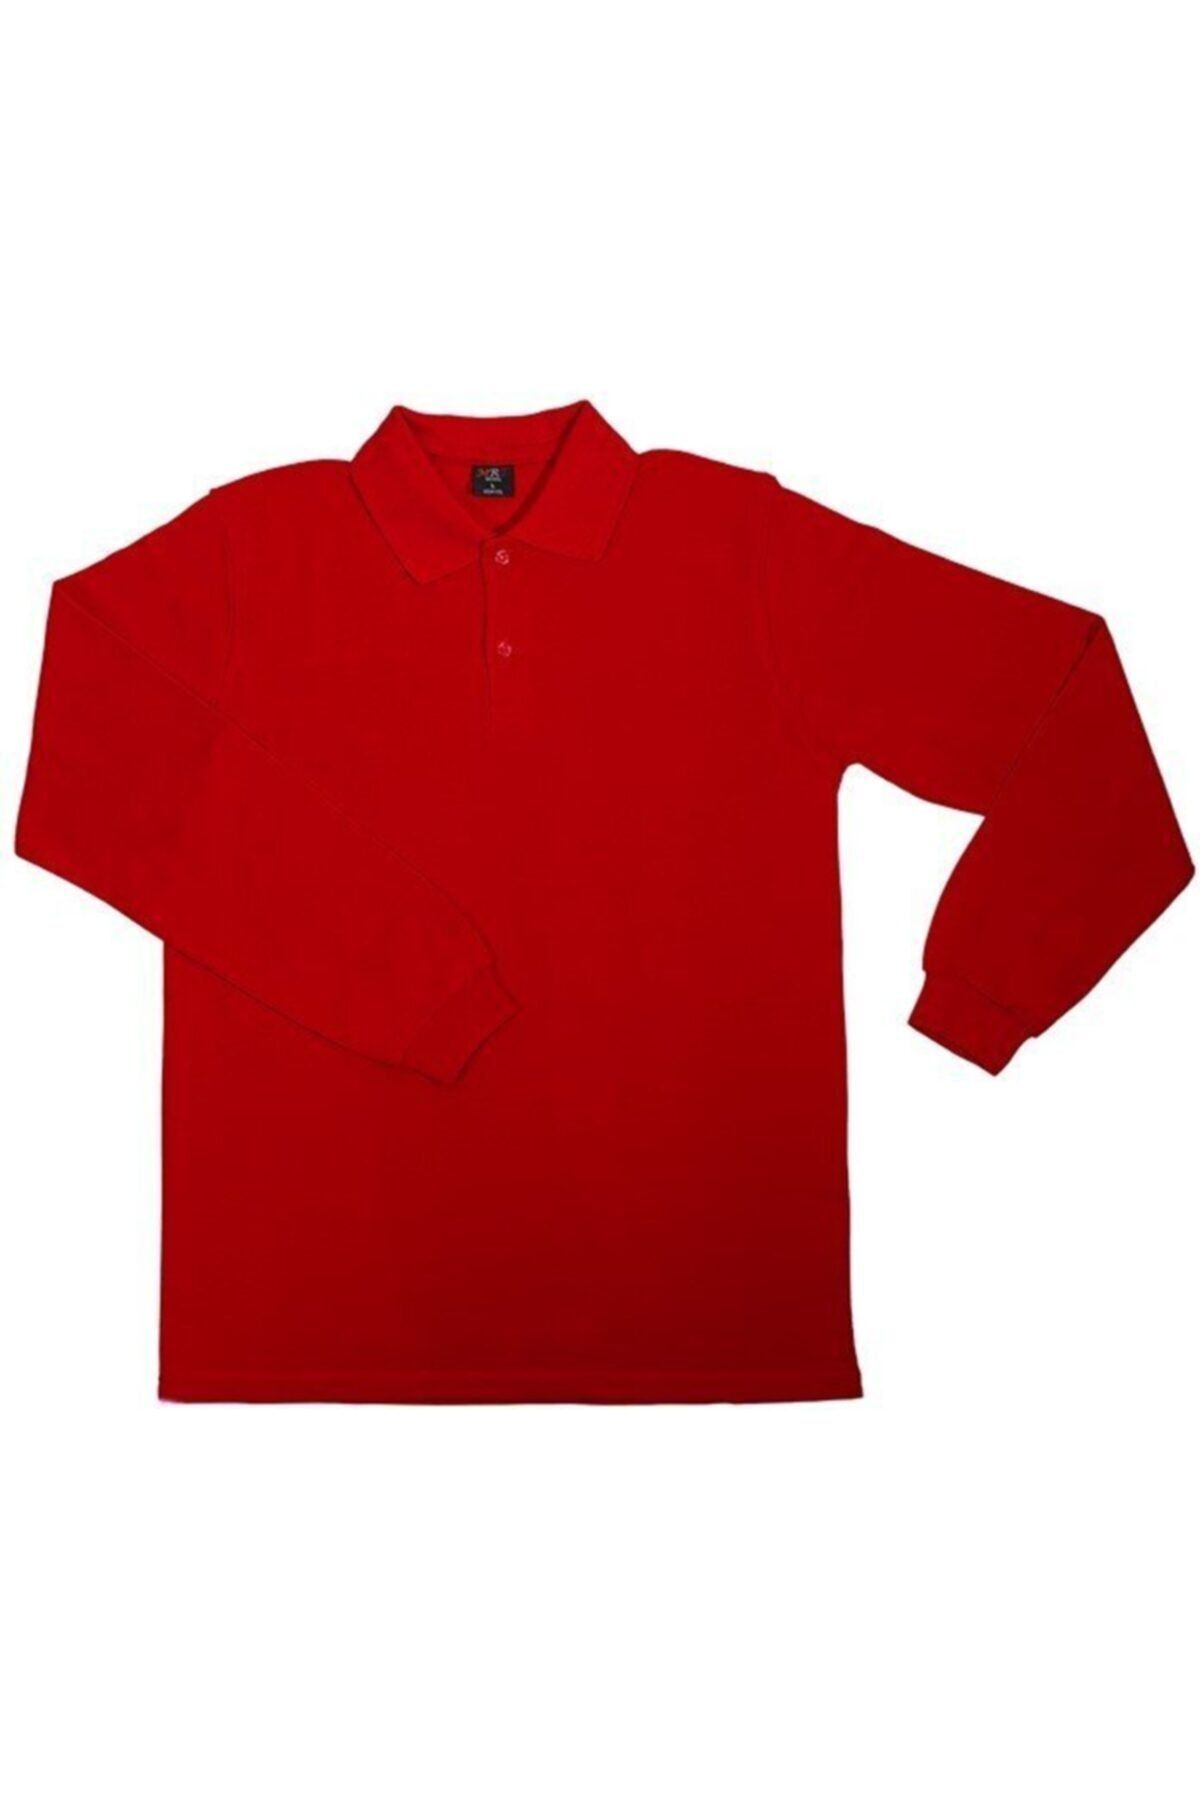 ümitteks iş ve okul kıyafetleri Unısex Penye Polo Yaka Uzun Kollu Kırmızı Tişört Çocuk/yetişkin